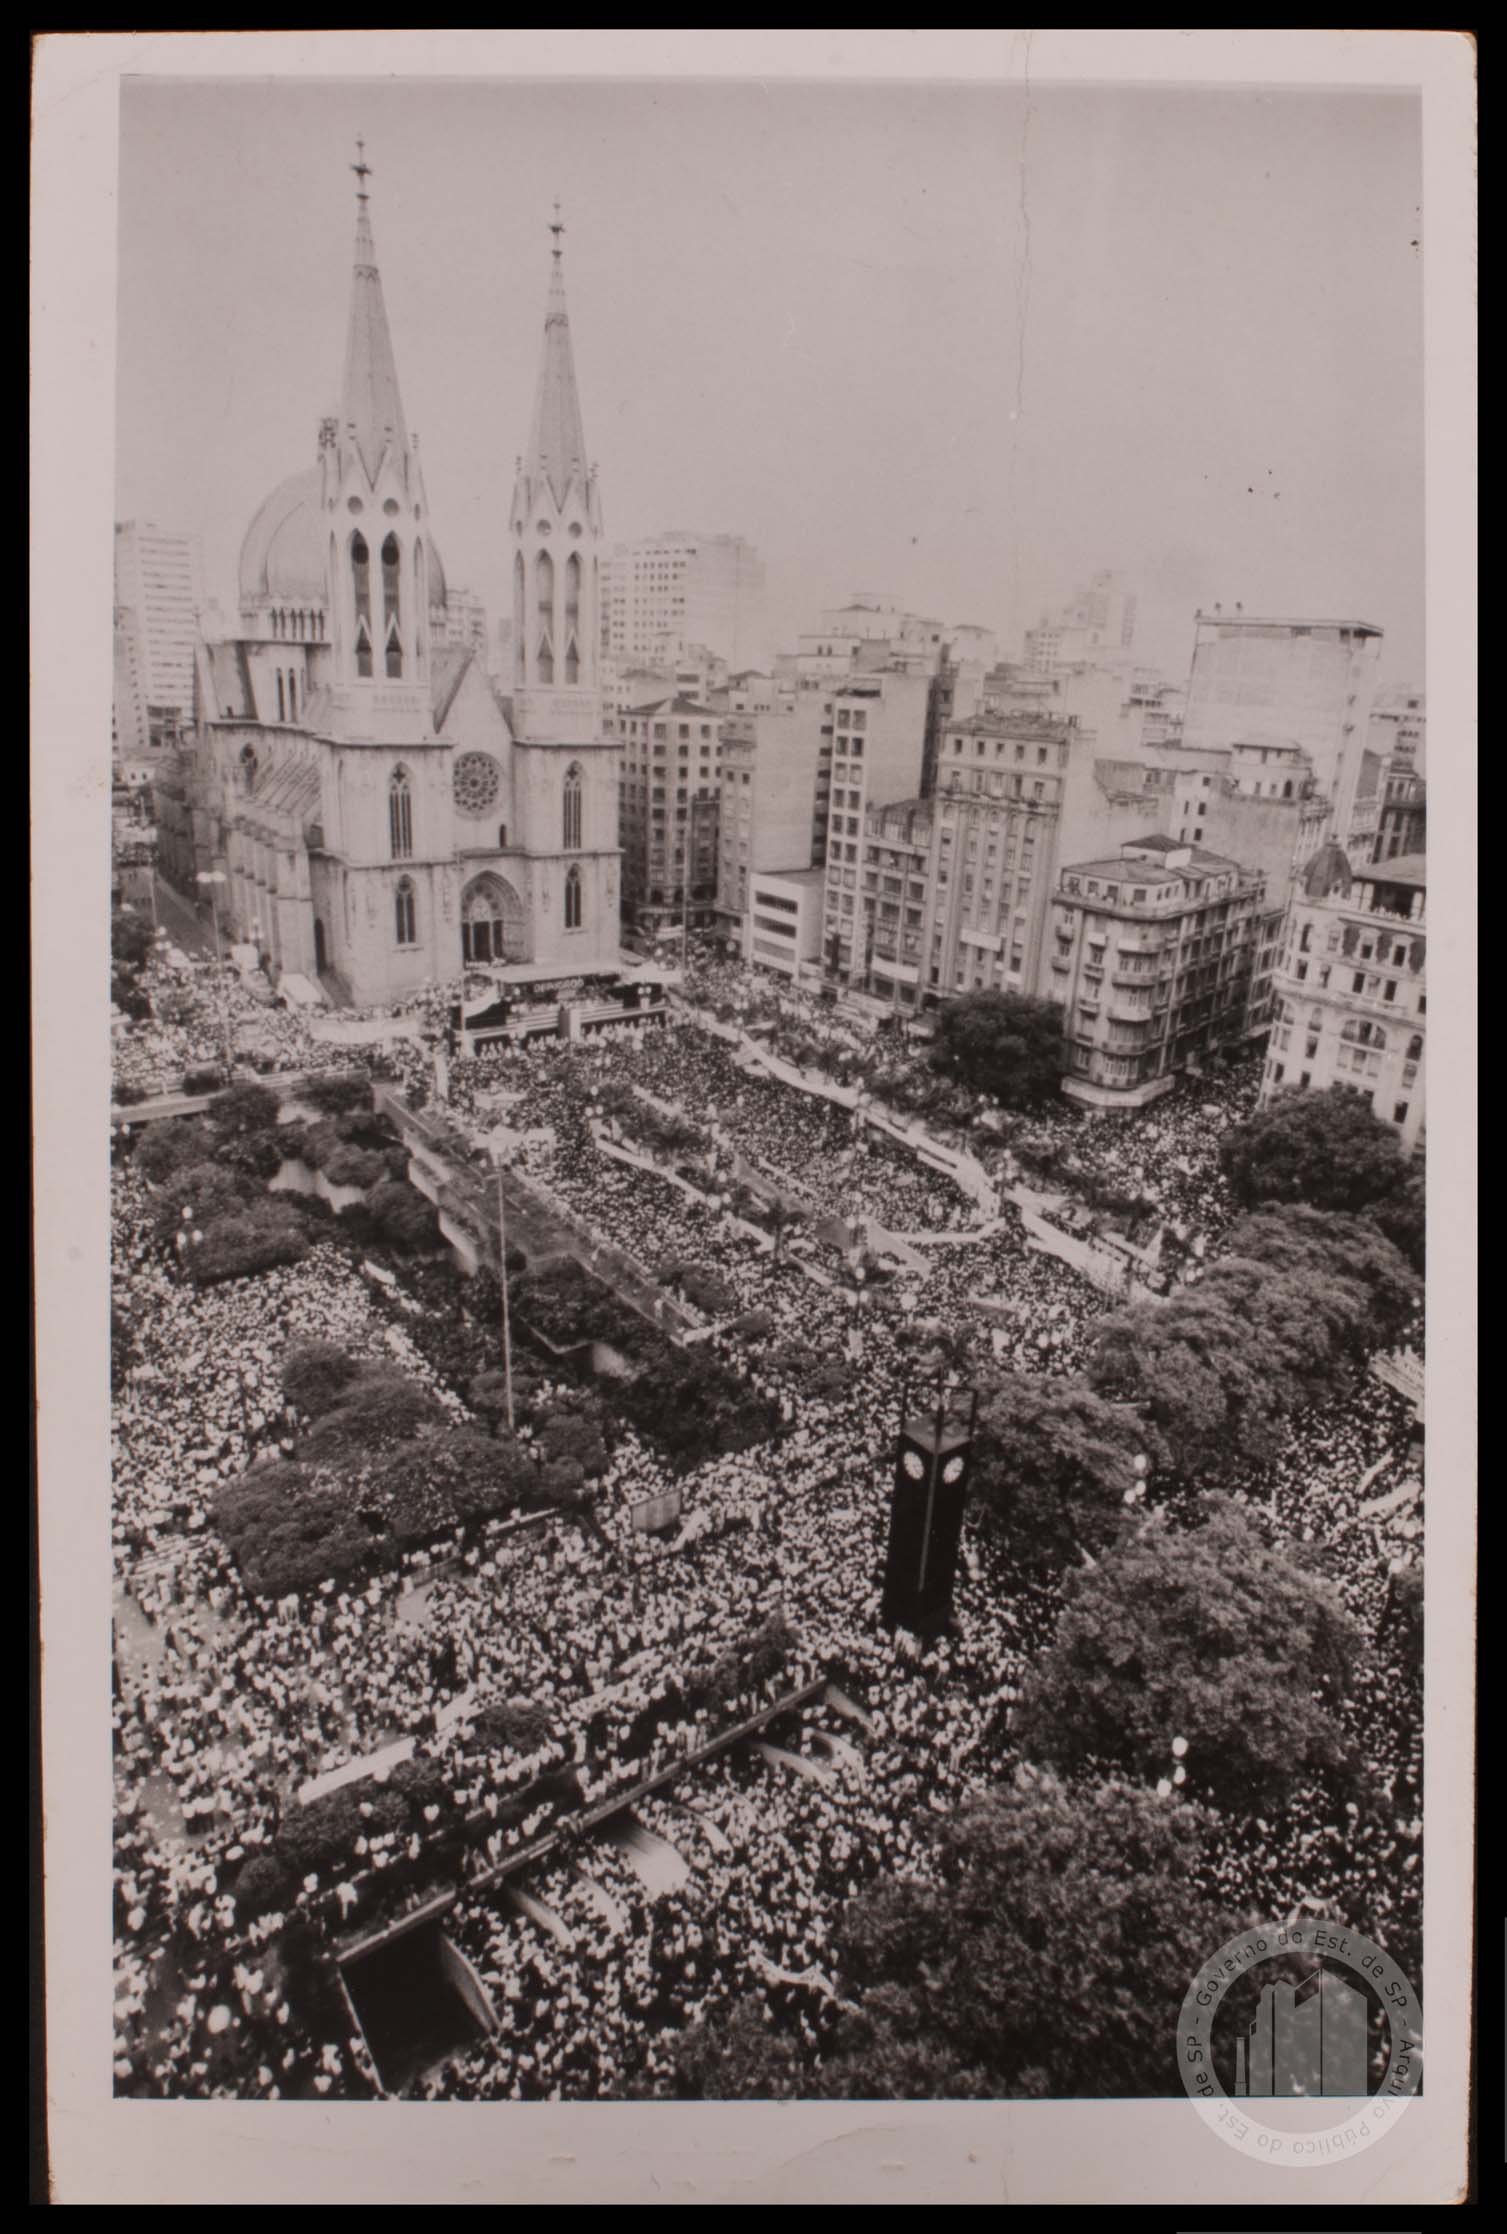 SP - Praça da Sé (2), Praça da Sé no começo de 1952, quando…